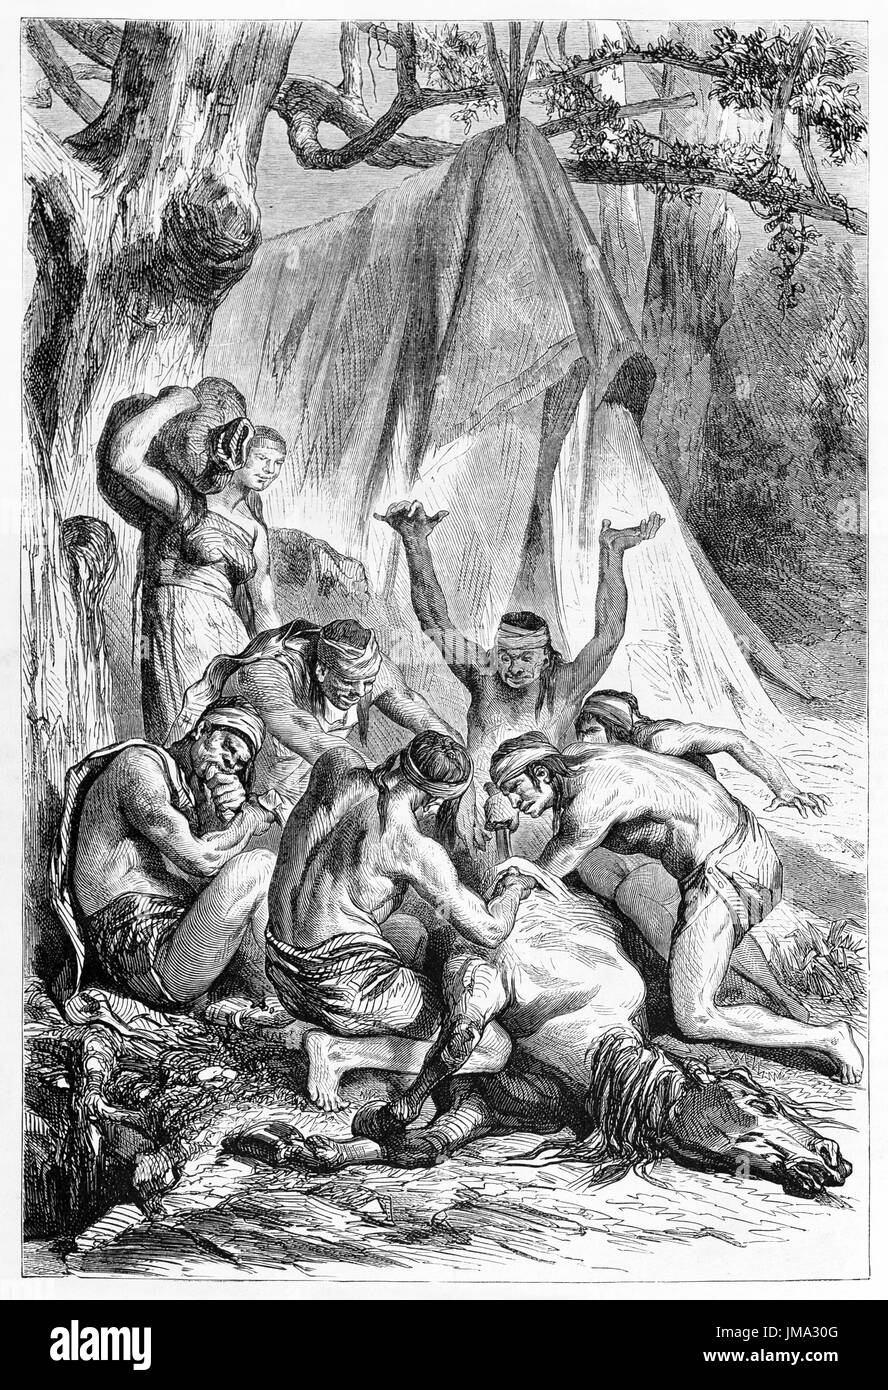 Vecchia illustrazione di rituali di sacrificio di cavallo da nativi della Patagonia. Creato da castelli, pubblicato in Le Tour du Monde, Parigi, 1861 Foto Stock